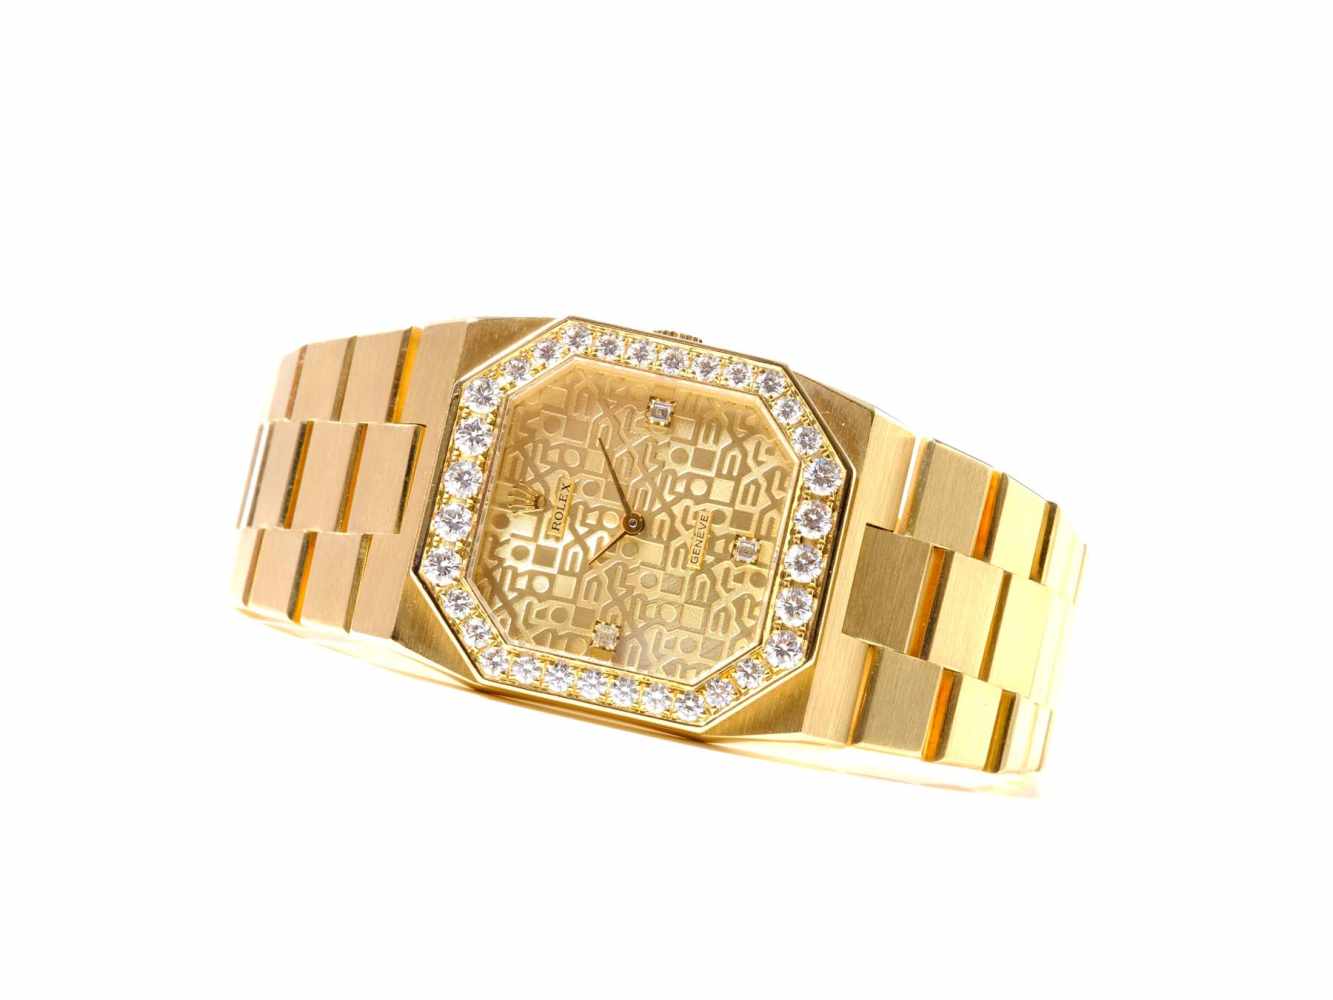 Rolex Cellini 18K Gold mit DiamantenExtrem seltene Armbanduhr aus 18 Karat Gold mit Diamantbesatz,